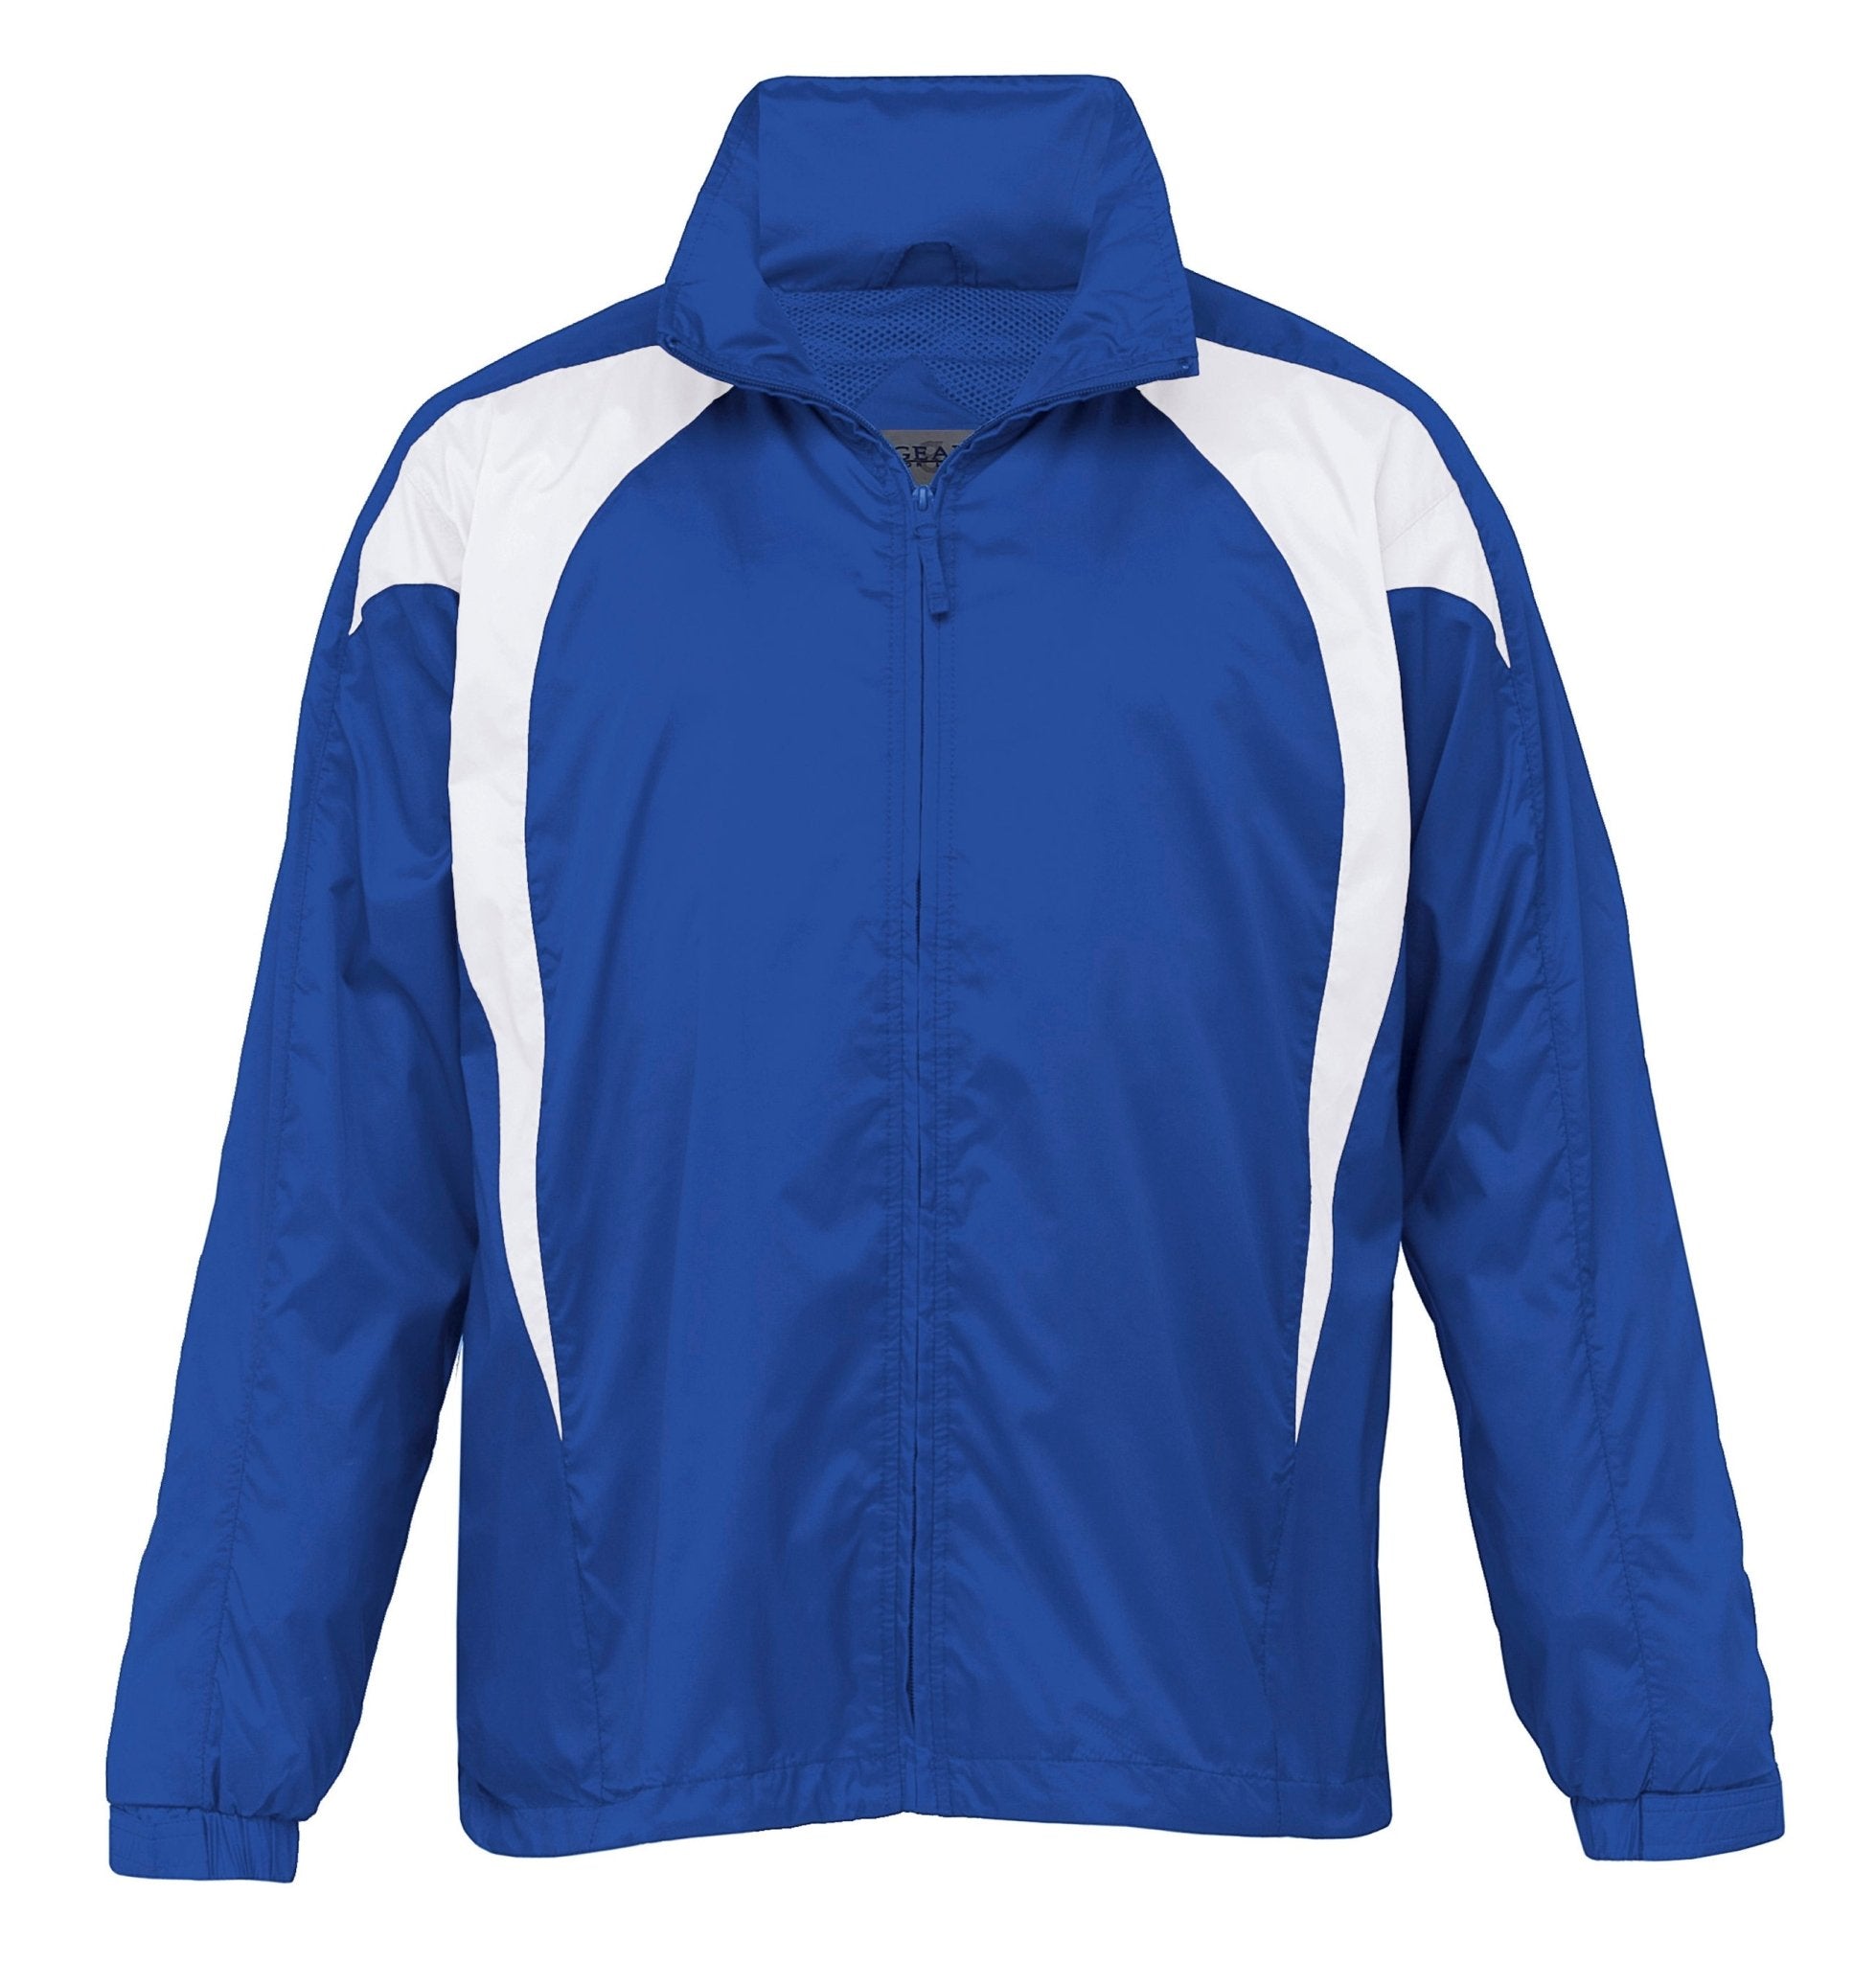 Spliced Zenith Jacket - kustomteamwear.com